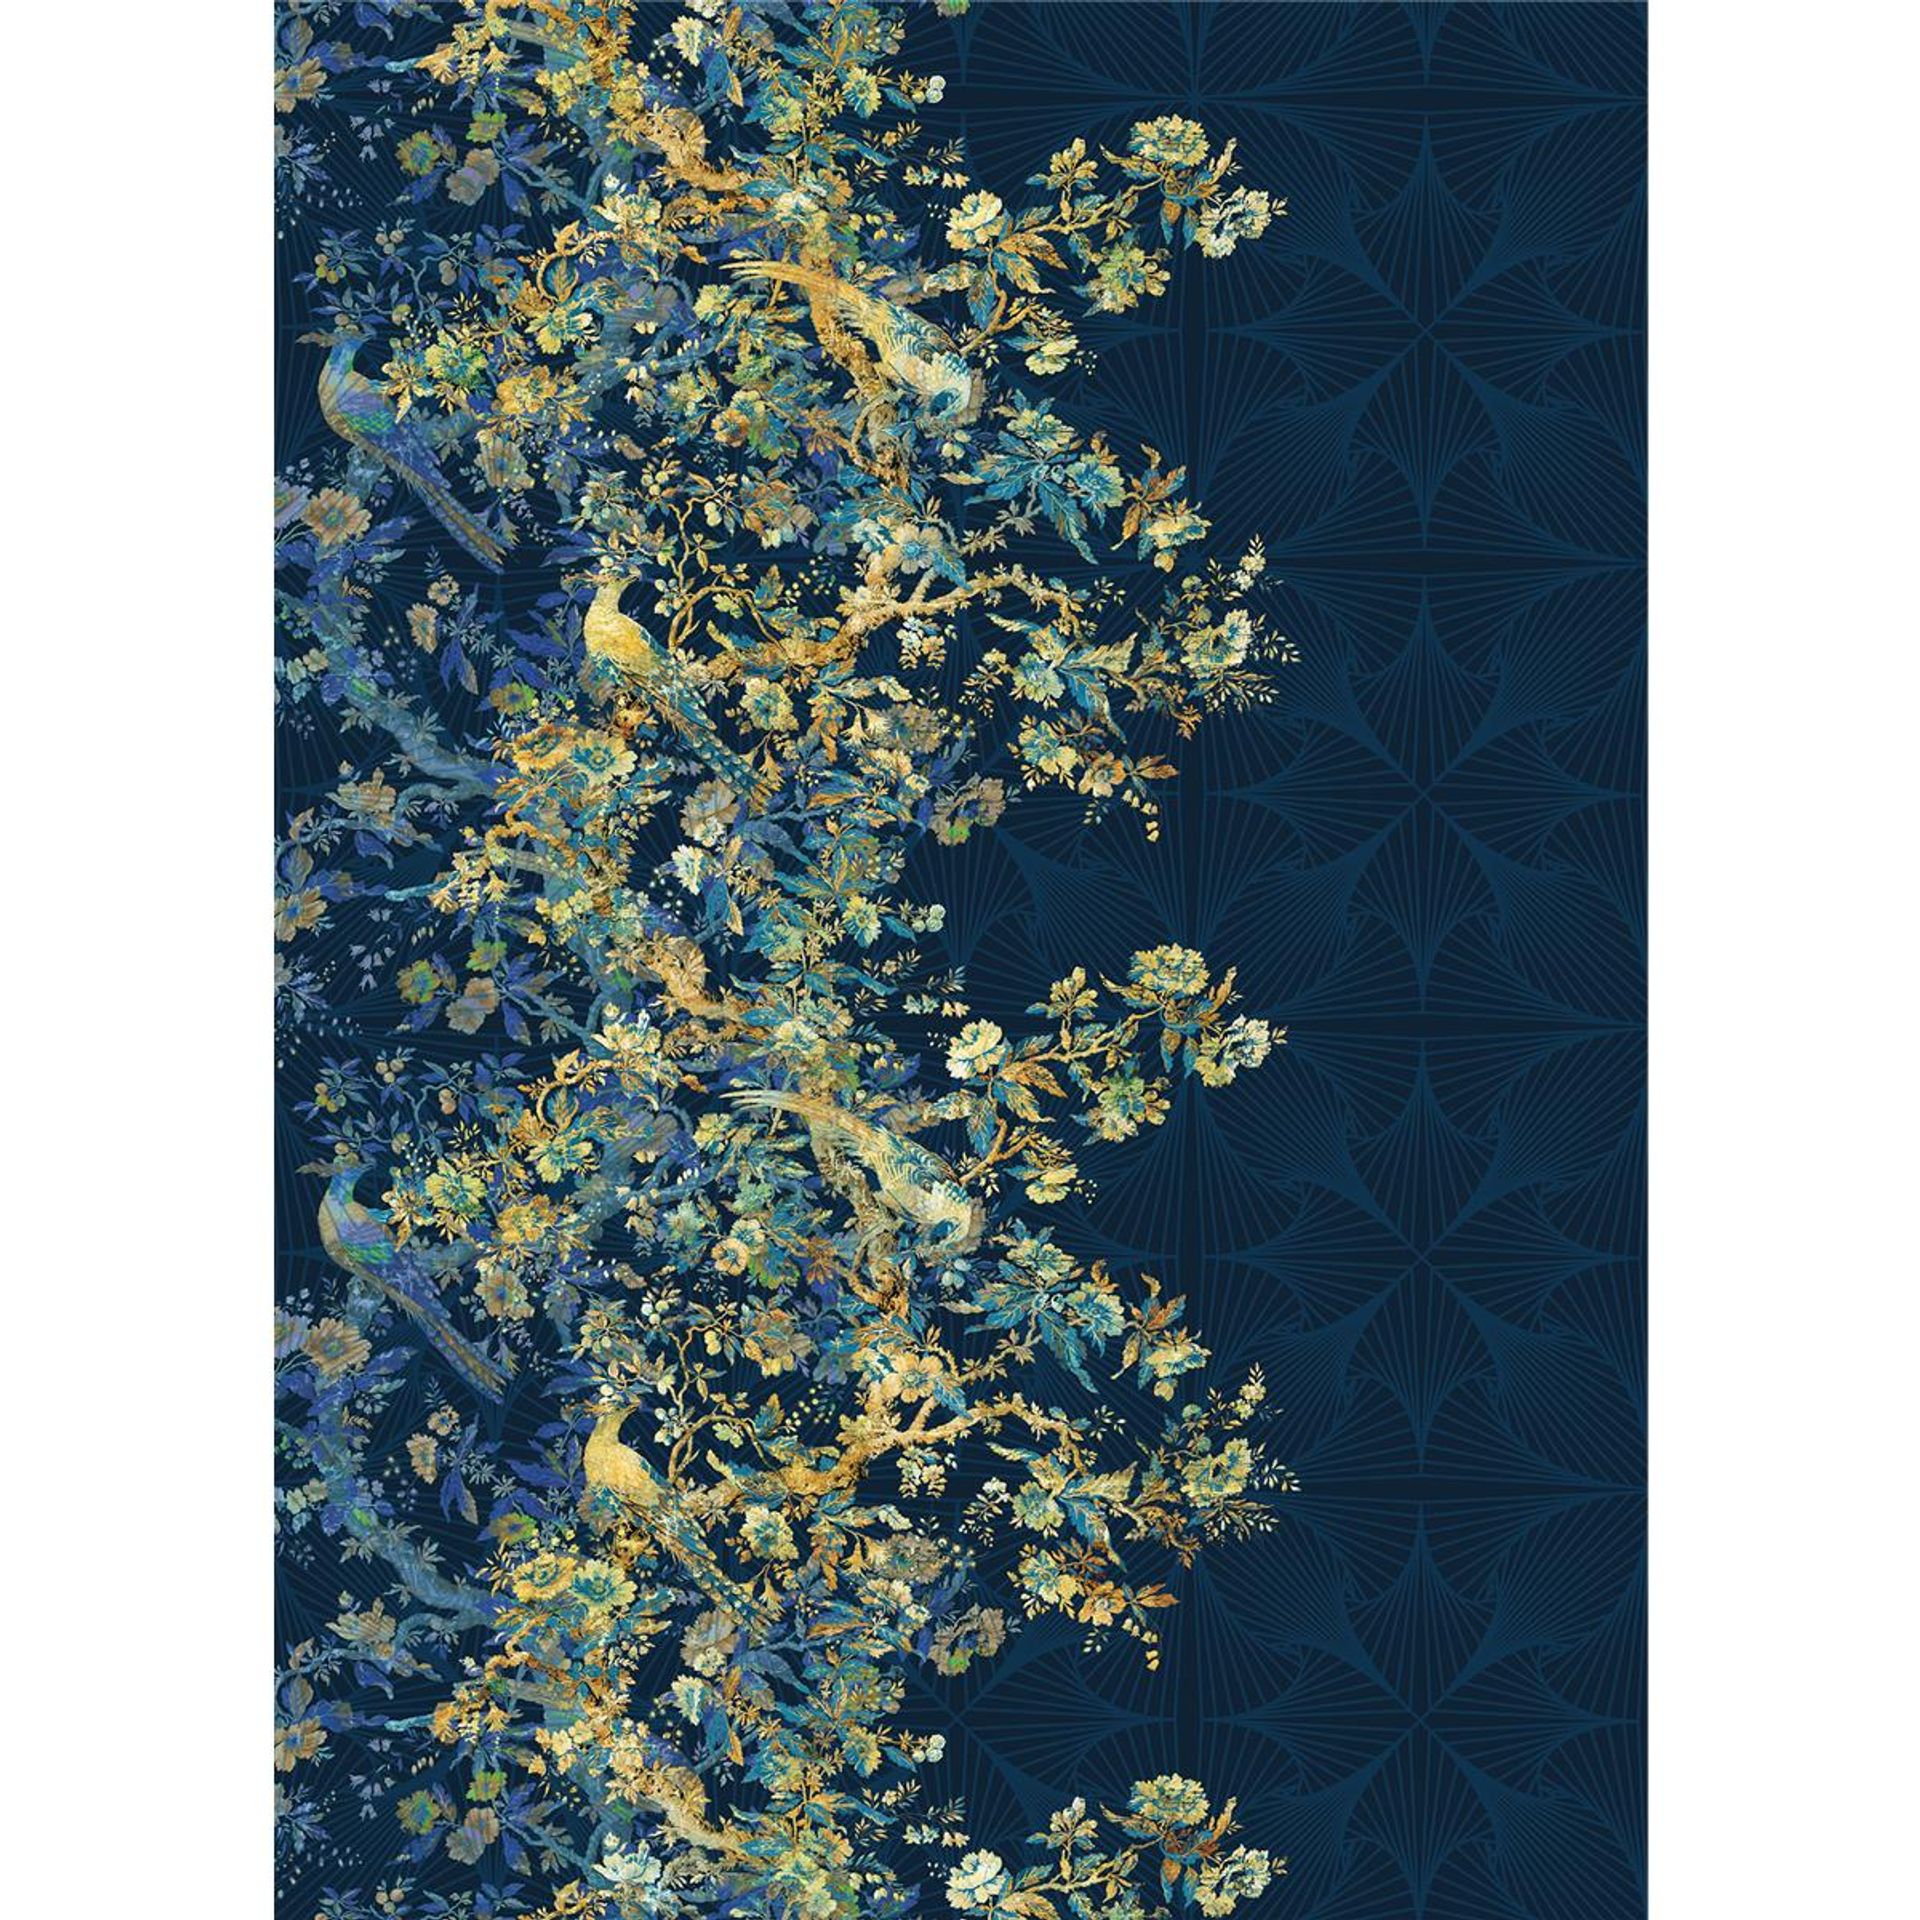 Vlies Fototapete - Nocturne - Größe 200 x 280 cm